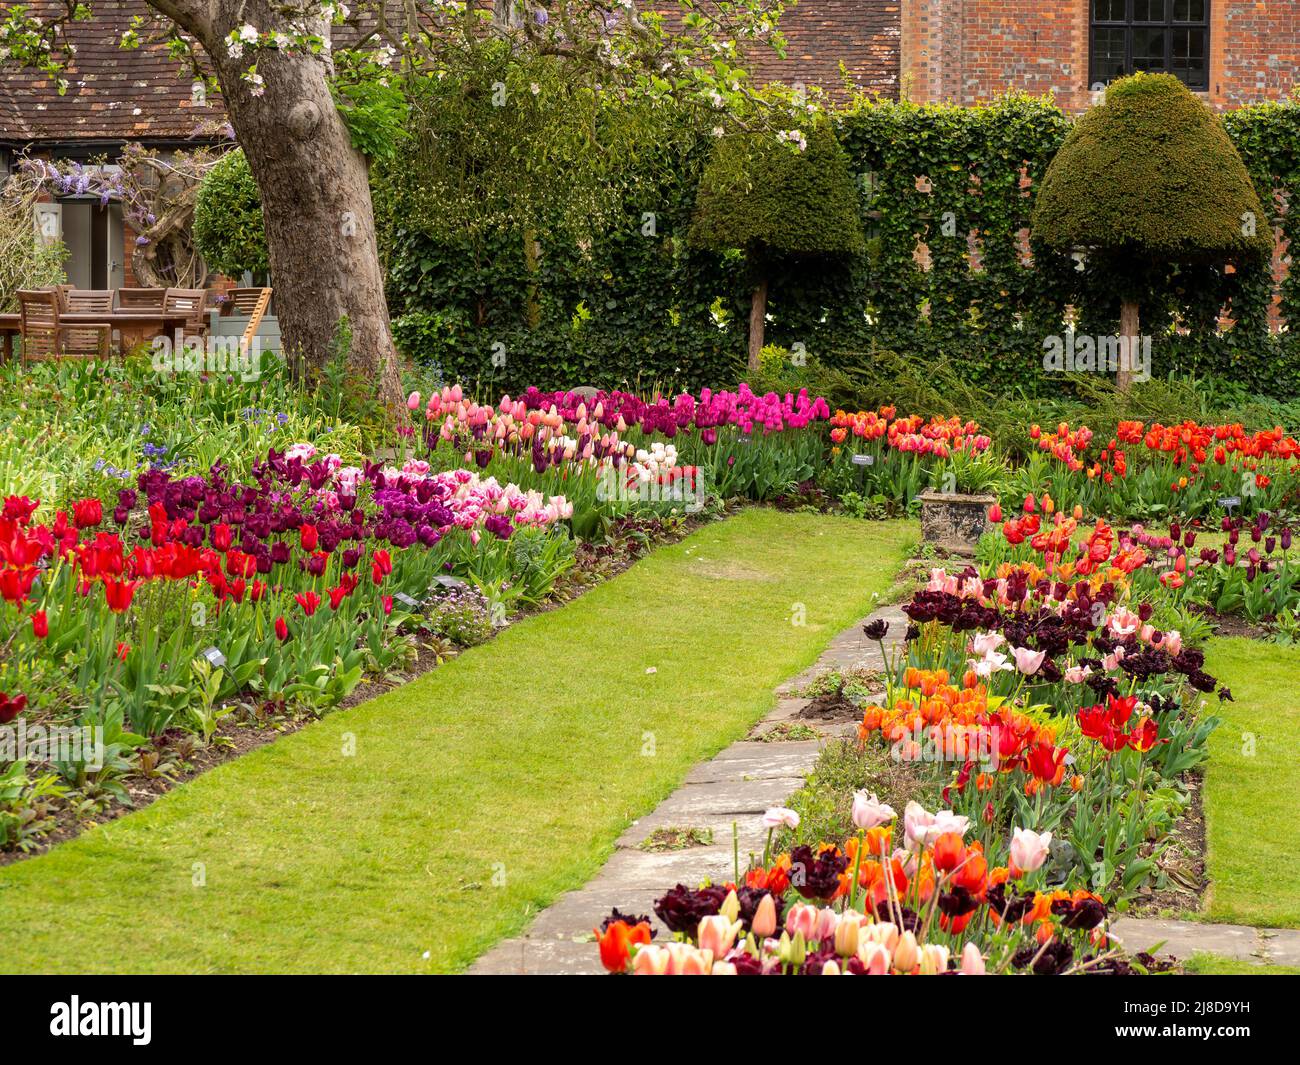 Chenies Manor Garden. Le jardin en contrebas de tulipe borde de beaucoup de variétés vibrantes plantées en groupes.sous le pommier Bramley par le trelis de lierre. Banque D'Images